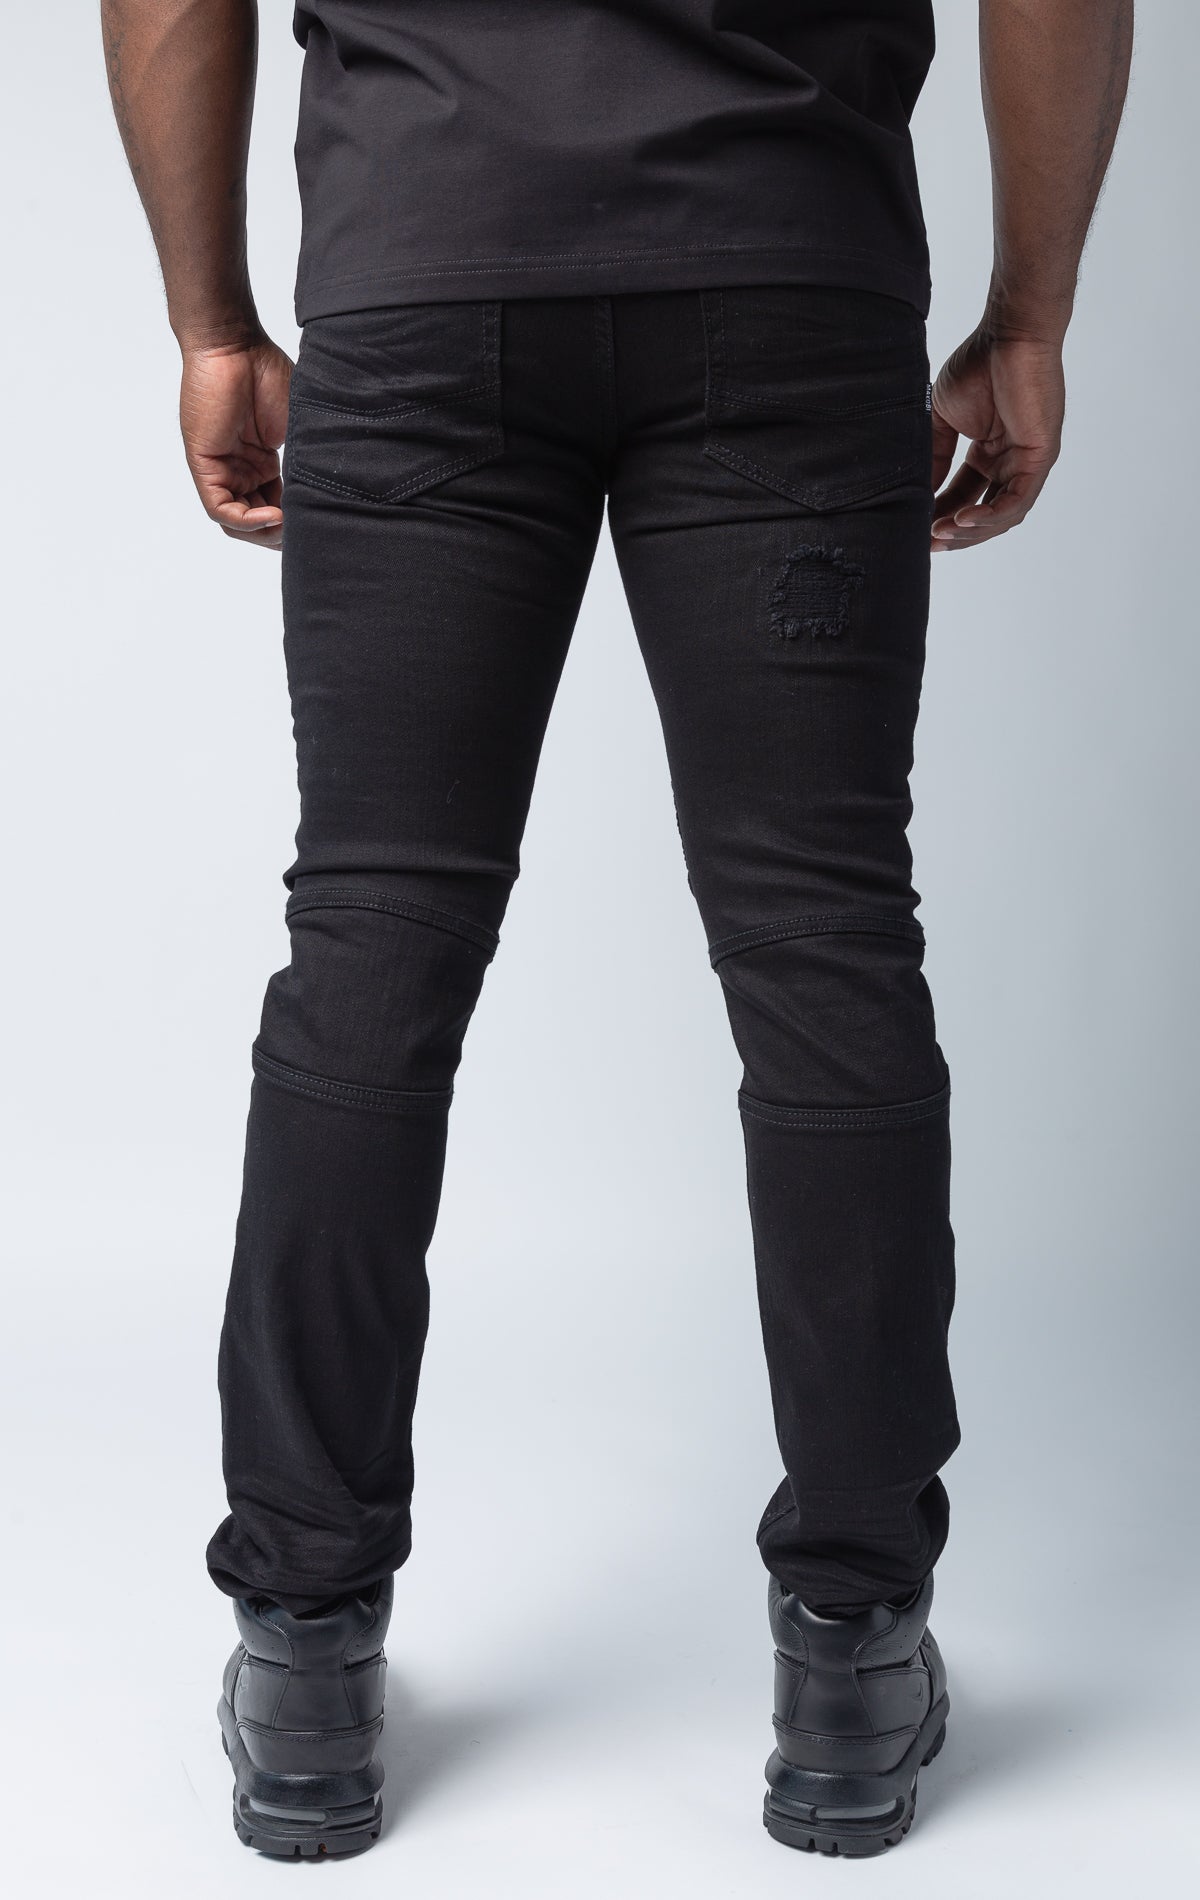 Black pants with rip and repair design and slim fit